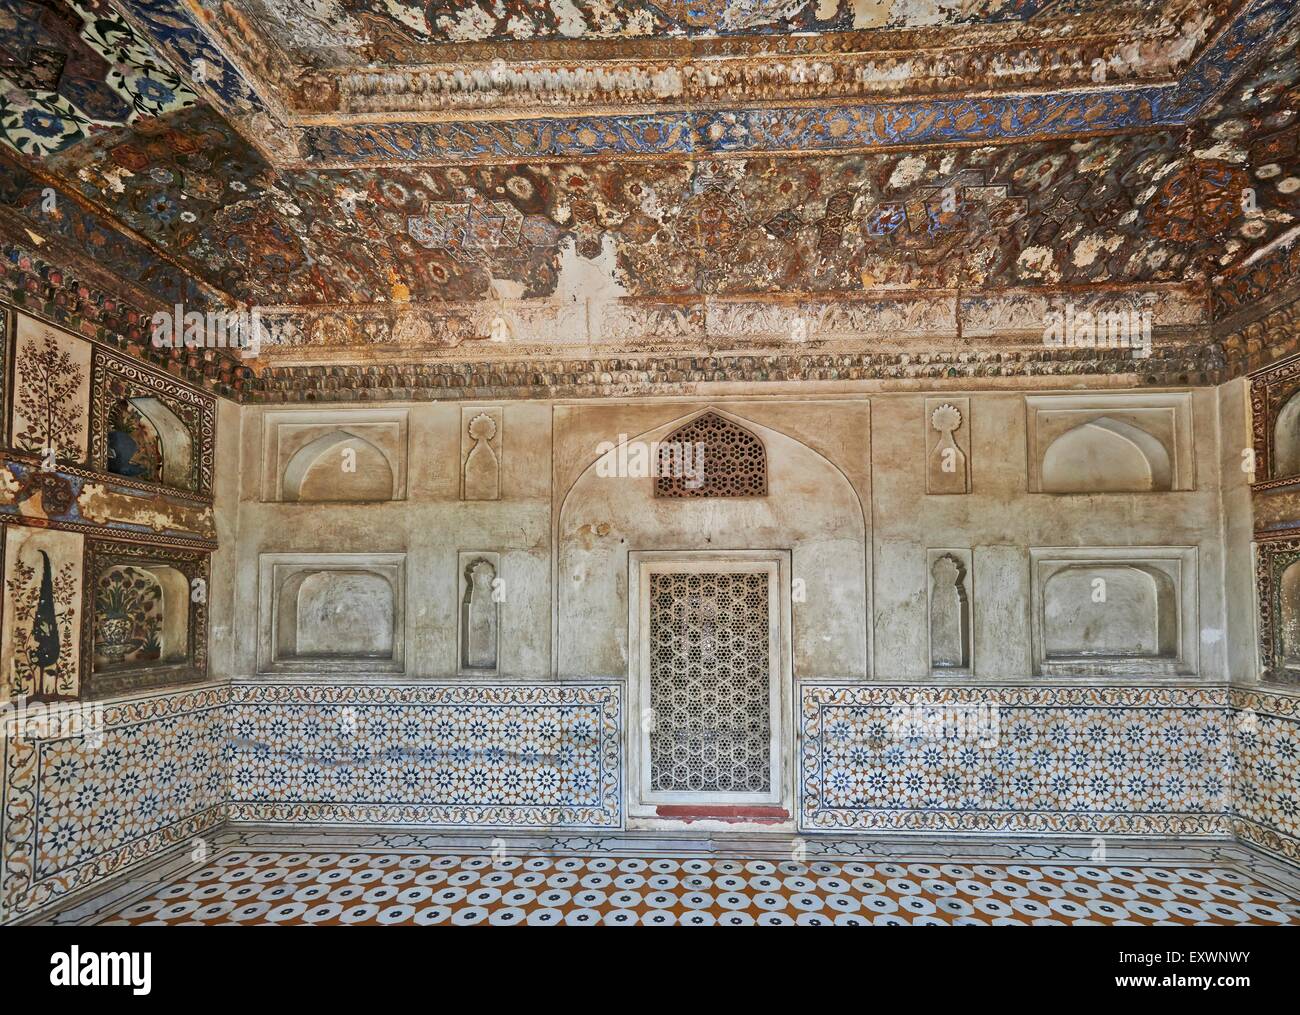 Innere des Mausoleums von Etimad-Ud-Daulah, Agra, Uttar Pradesh, Indien Stockfoto